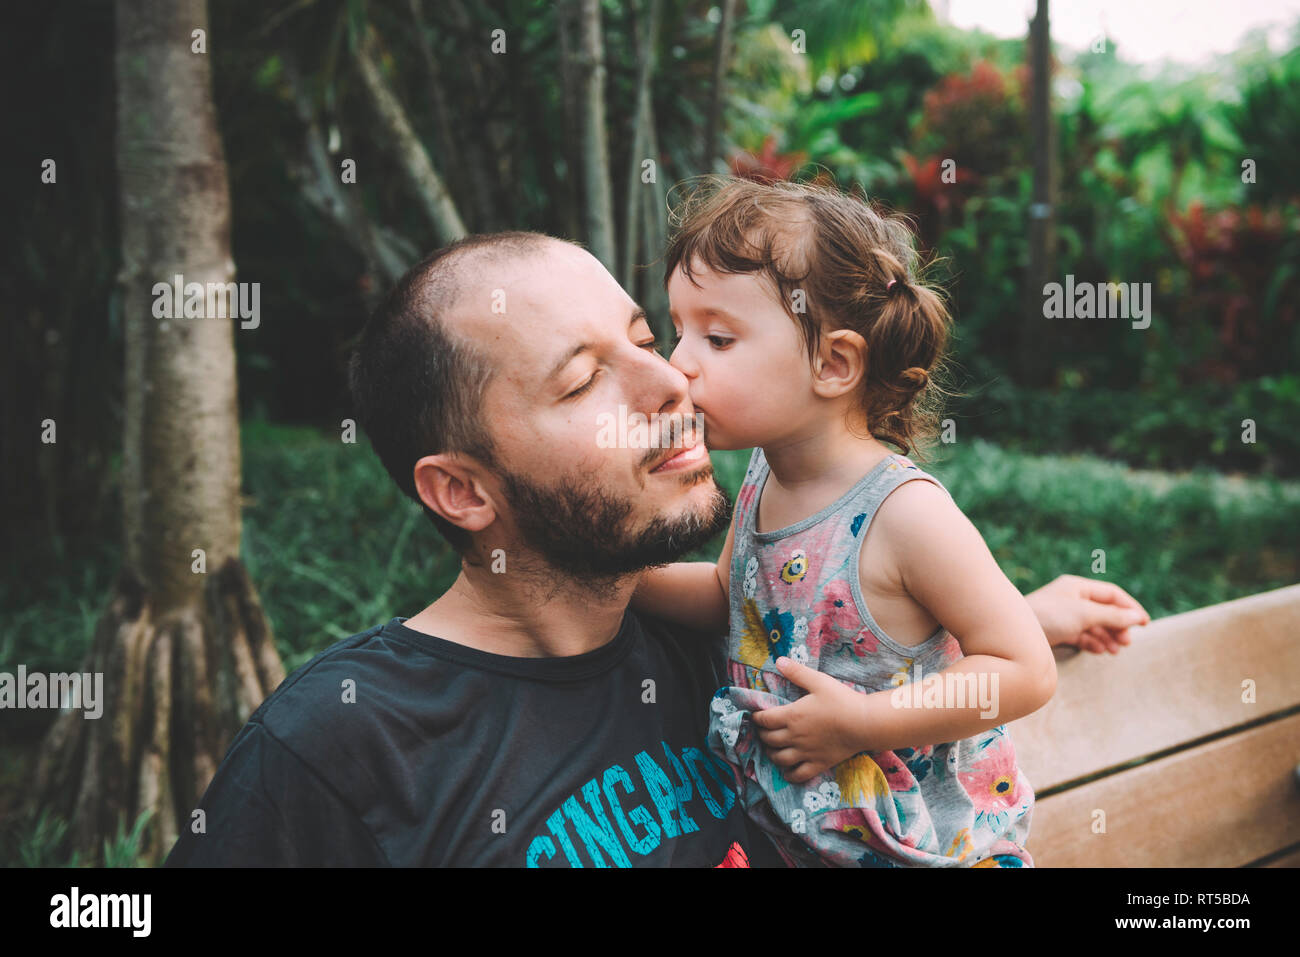 Baby ragazza baciare suo padre sulla guancia in un parco Foto Stock